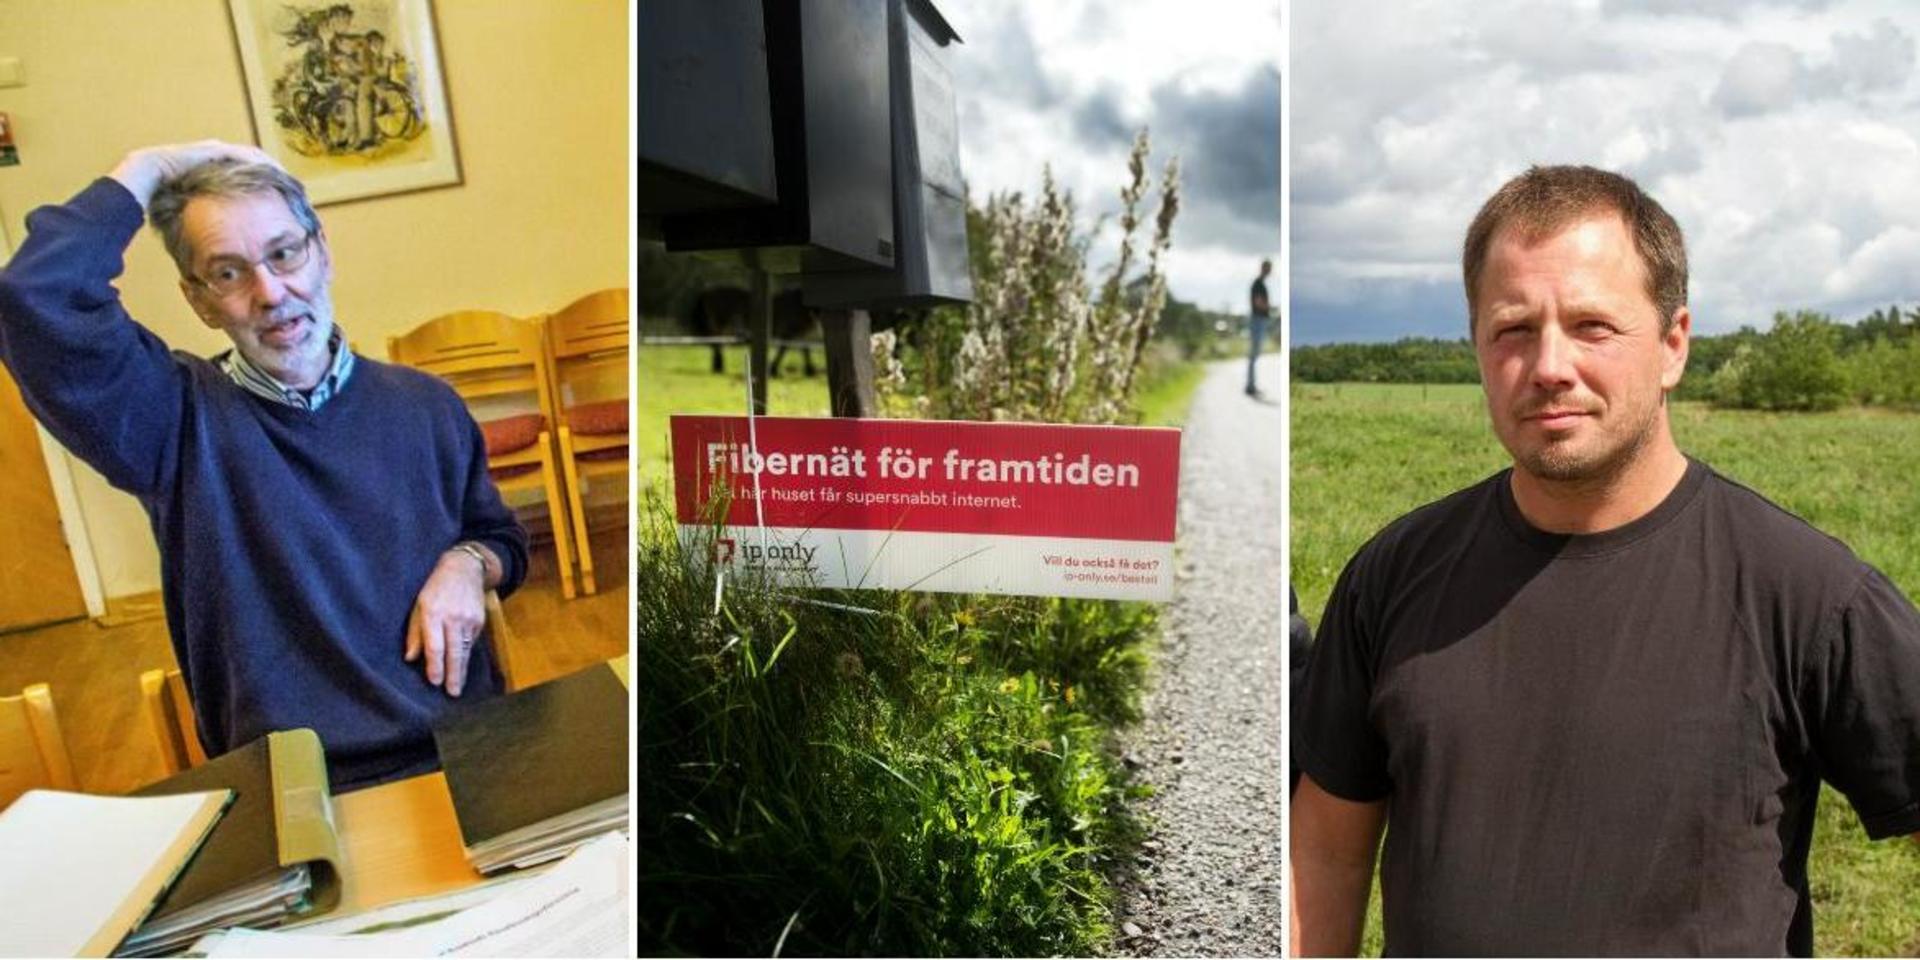 Lars Ingemarson och Stefan Sunnegård tillhör dem som blivit uppringda av påstridiga telefonförsäljare från Ip Only som vill sälja in ett nytt avtal för fiberinstallation. ”Känns som bondfångeri”, säger Lars Ingemarson.